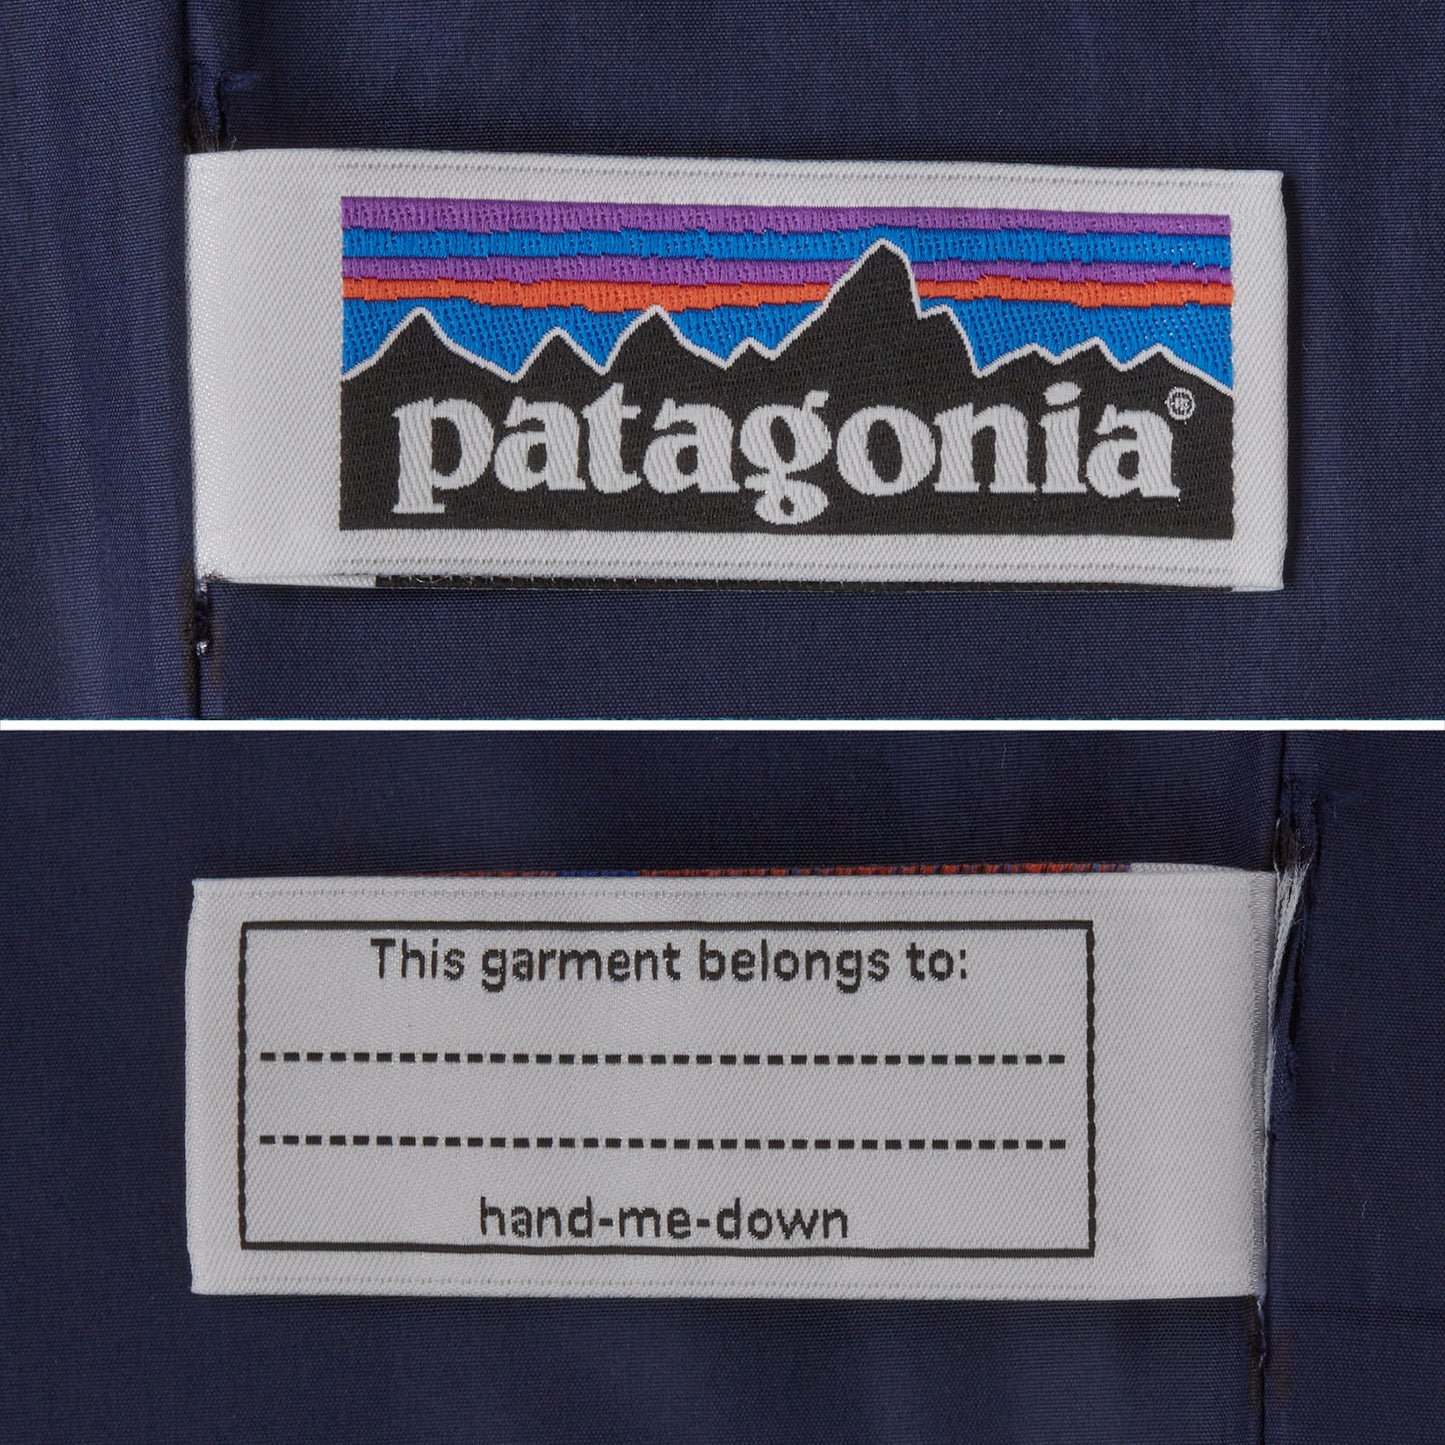 Patagonia®大童款 Retro-X® Fleece Vest